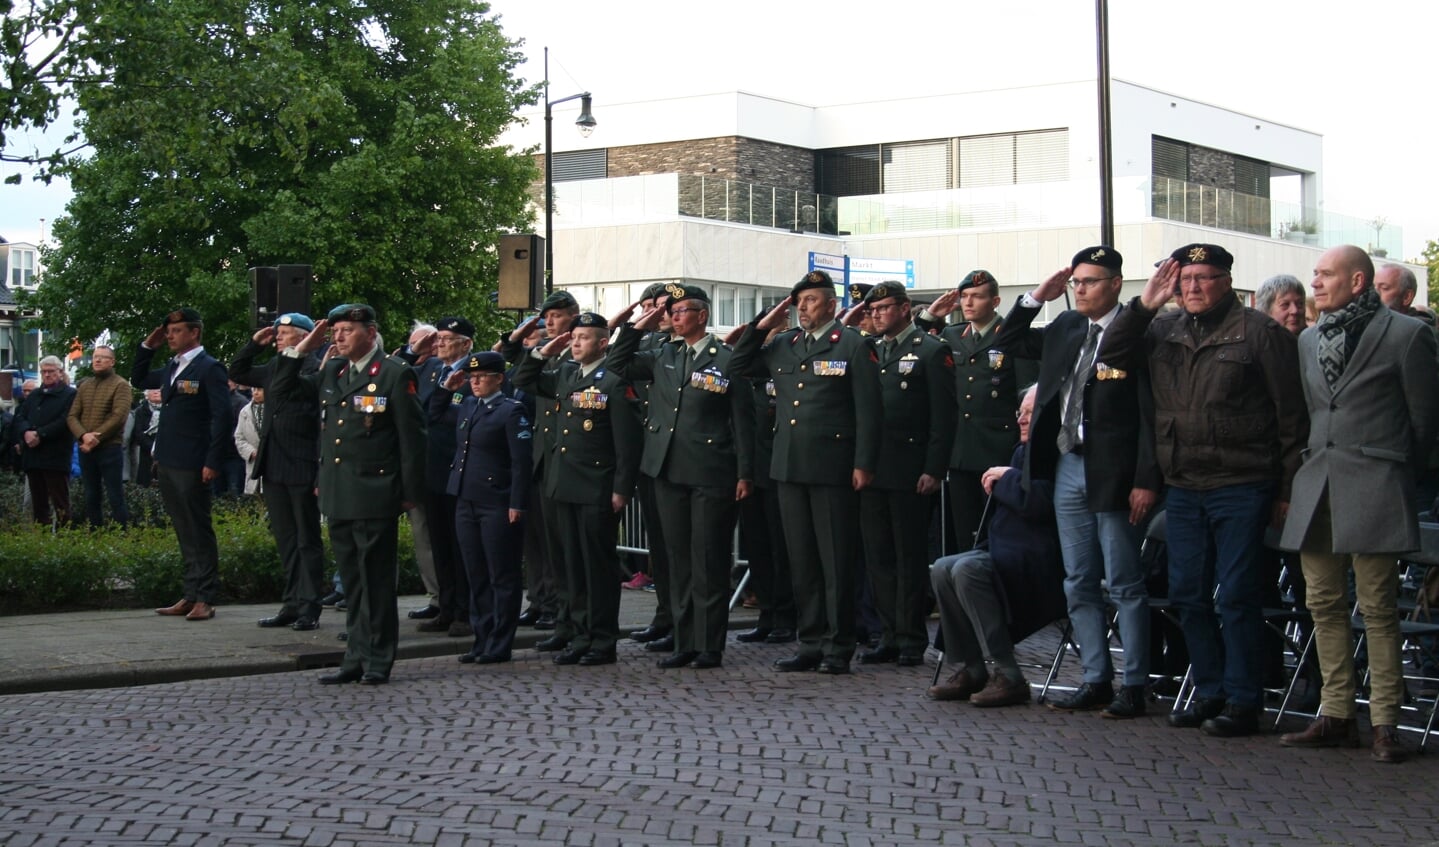 Veteranen waren aanwezig bij de herdenking. Foto: Verona Westera 